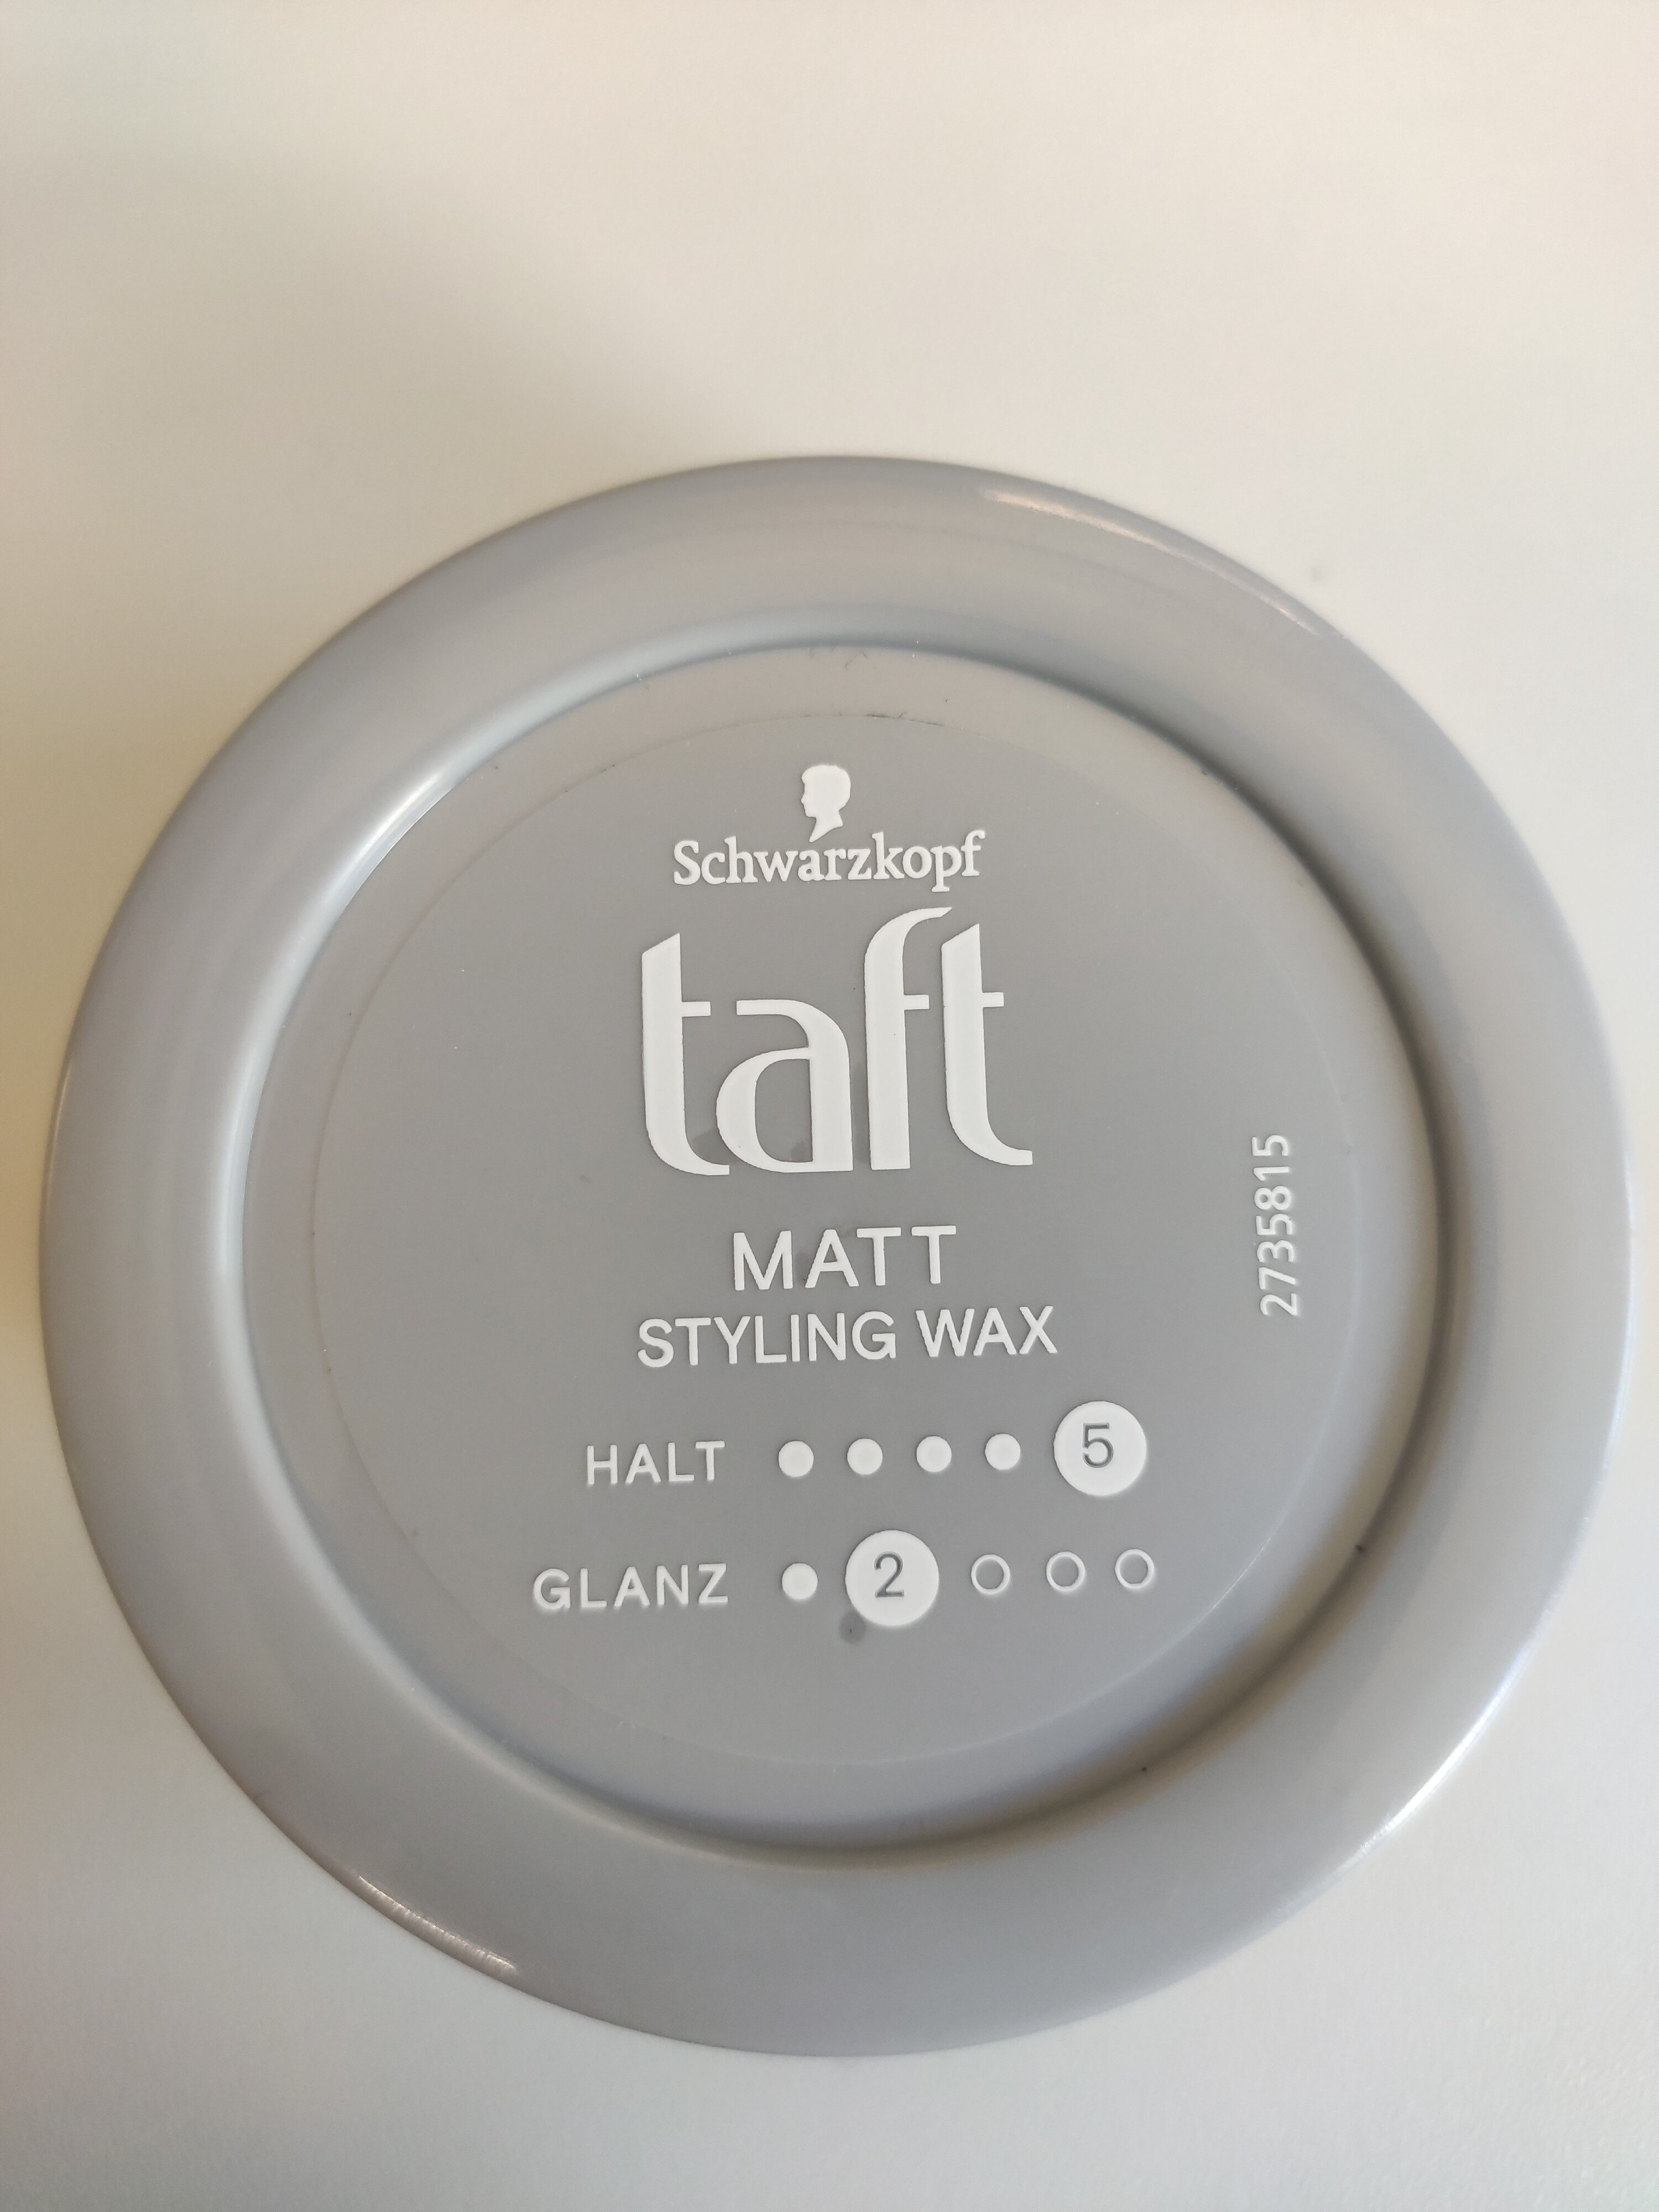 taft Styling Wax Matt - Product - de